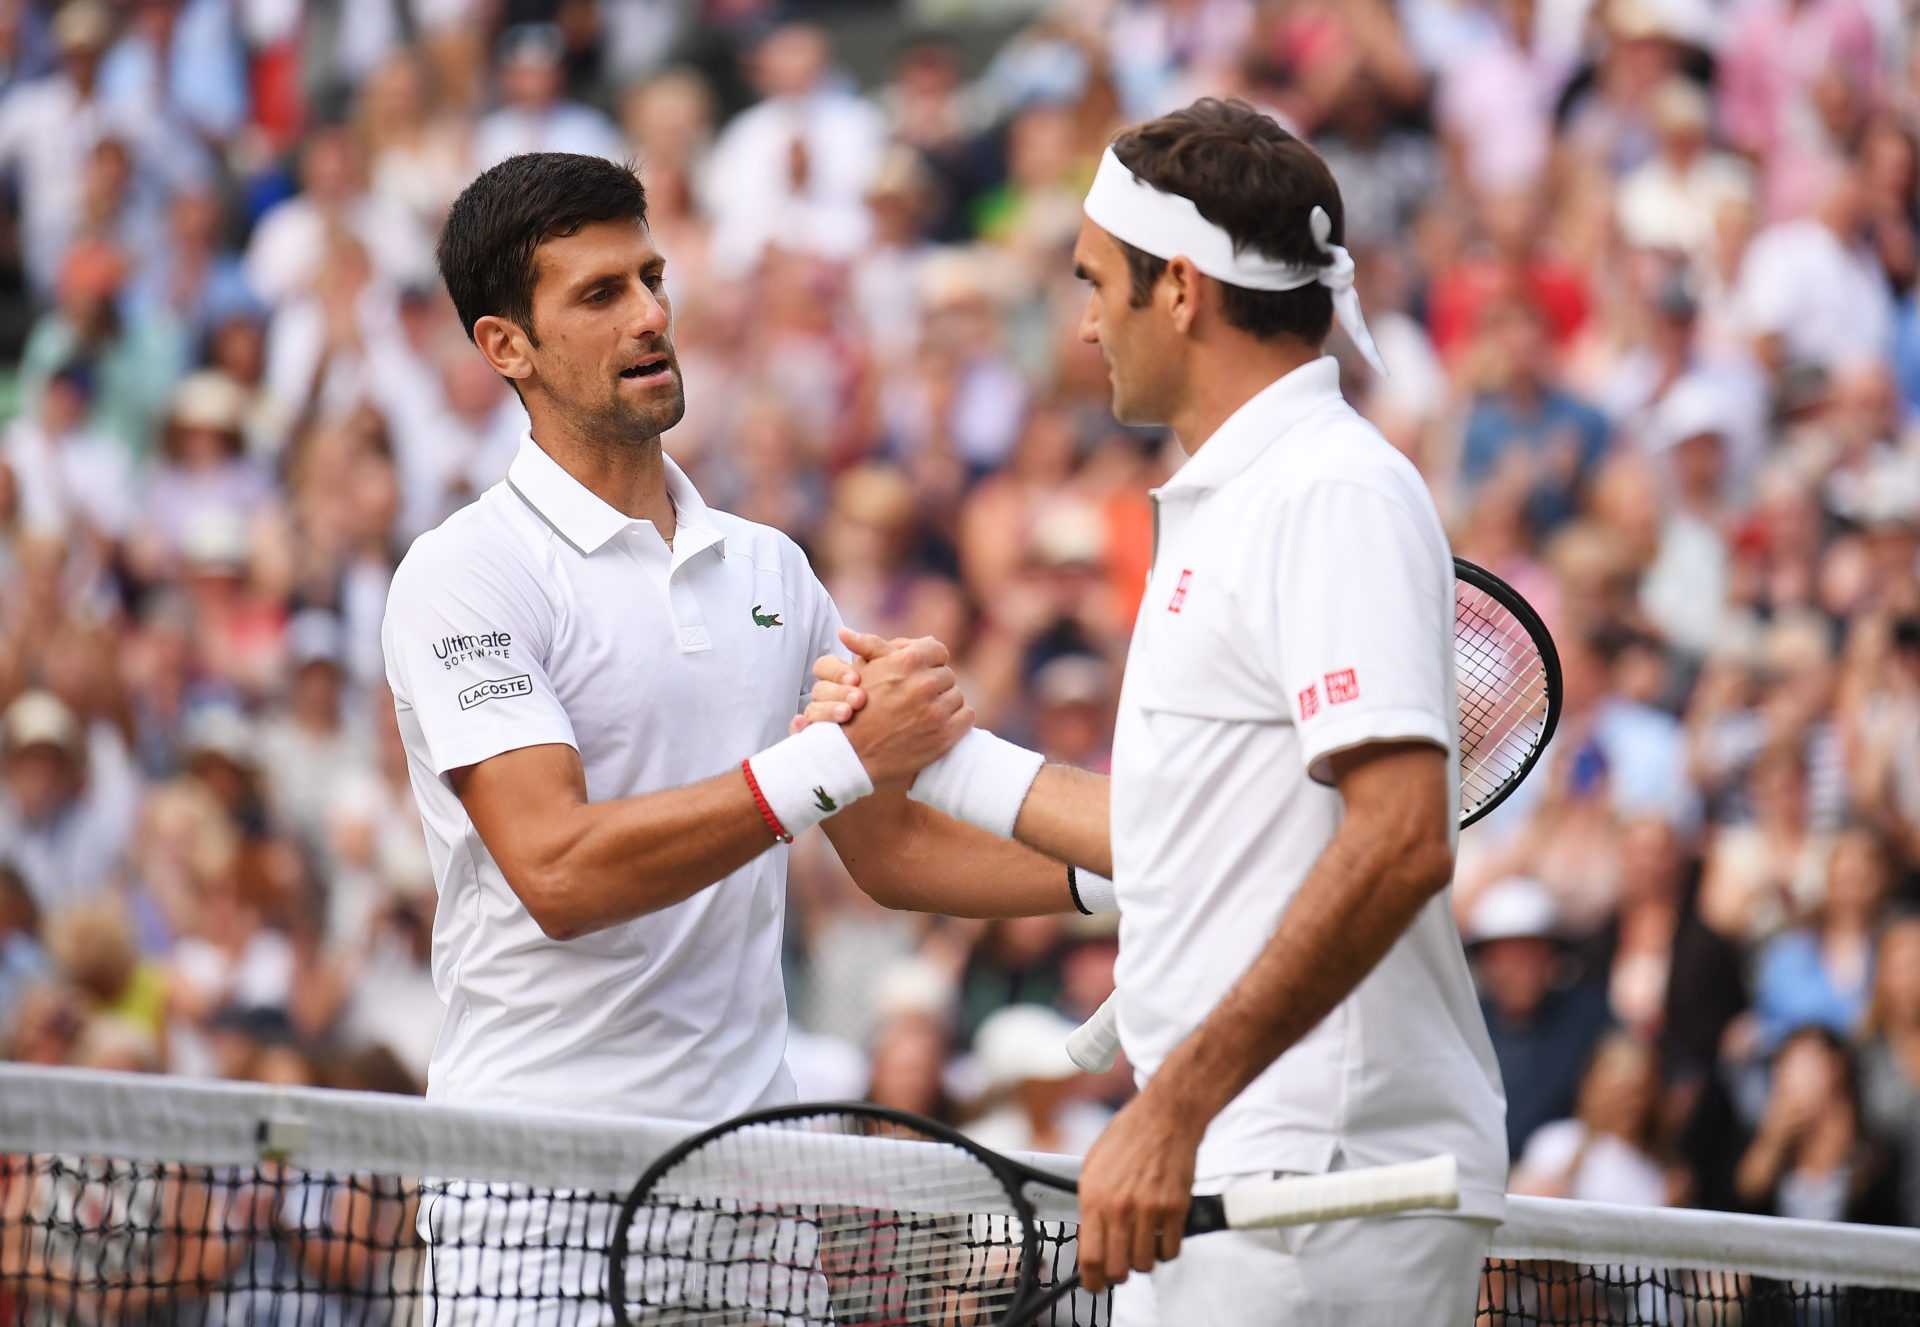 Le père de Novak Djokovic accuse Roger Federer d'avoir agressé son fils alors qu'il avait 18-19 ans